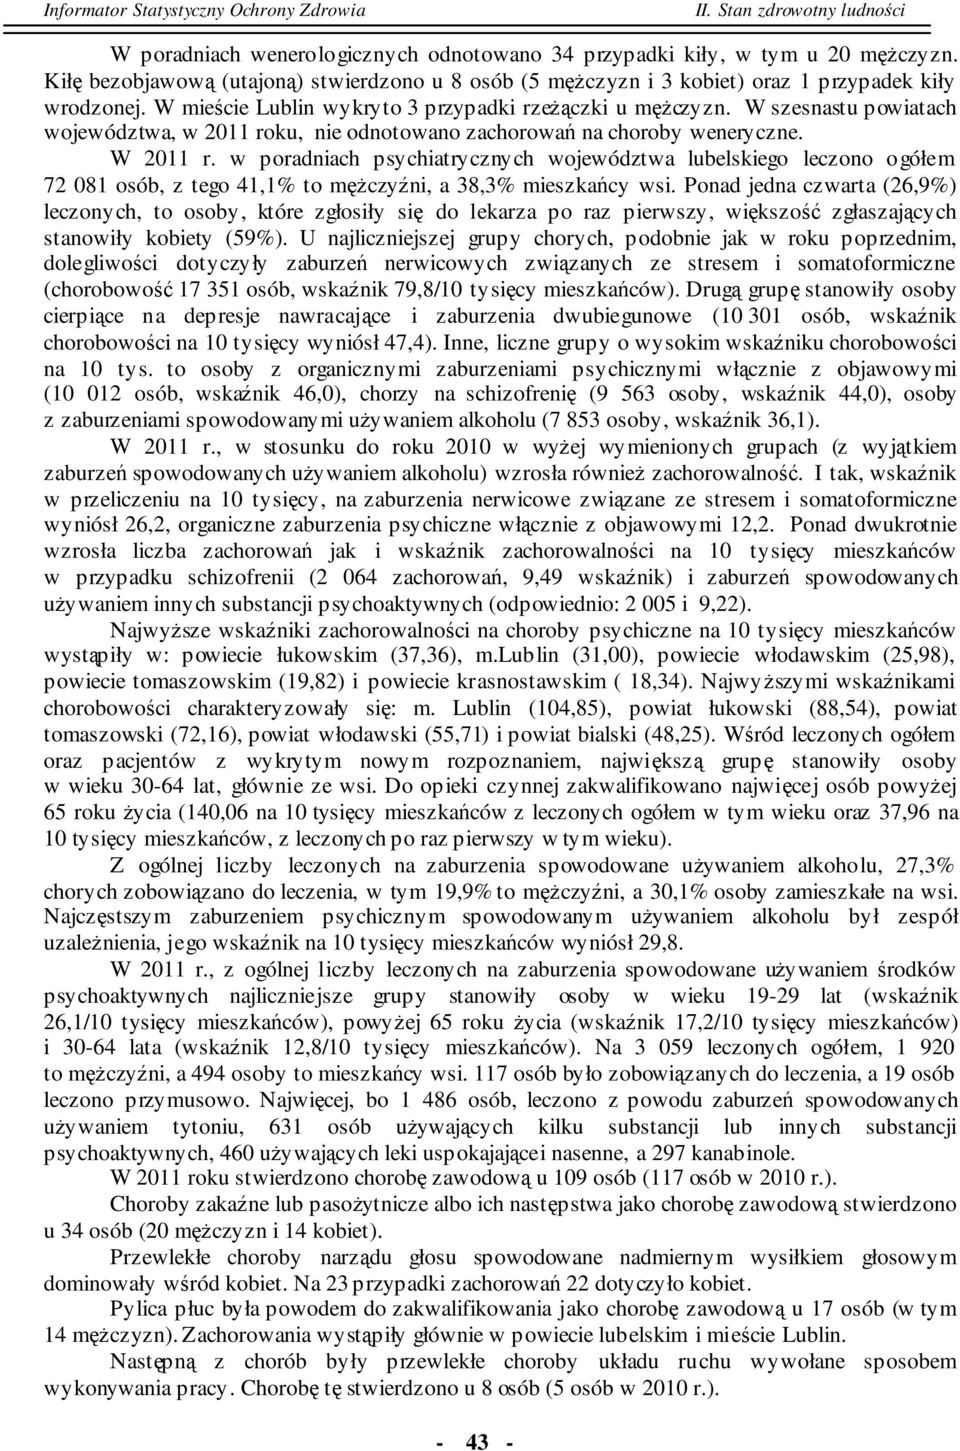 w poradniach psychiatrycznych województwa lubelskiego leczono 72 081 osób, z tego 41,1% to mężczyźni, a 38,3% mieszkańcy wsi.